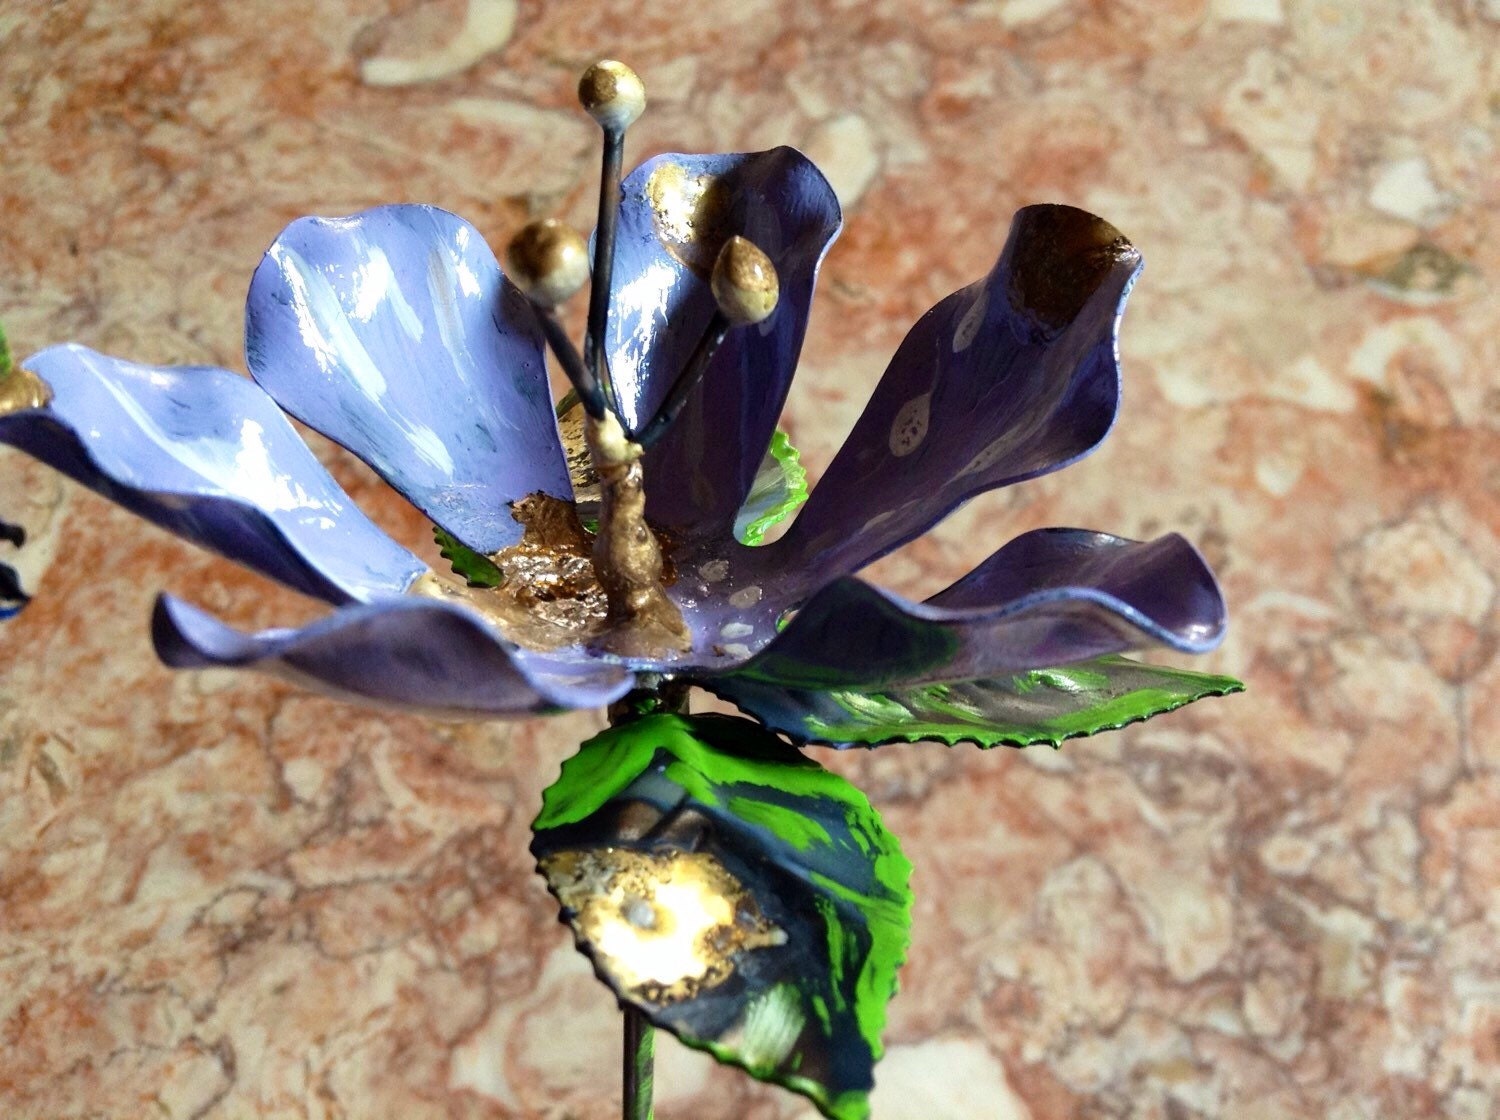 Metal flower // Hand painted flowers // everlasting flowers